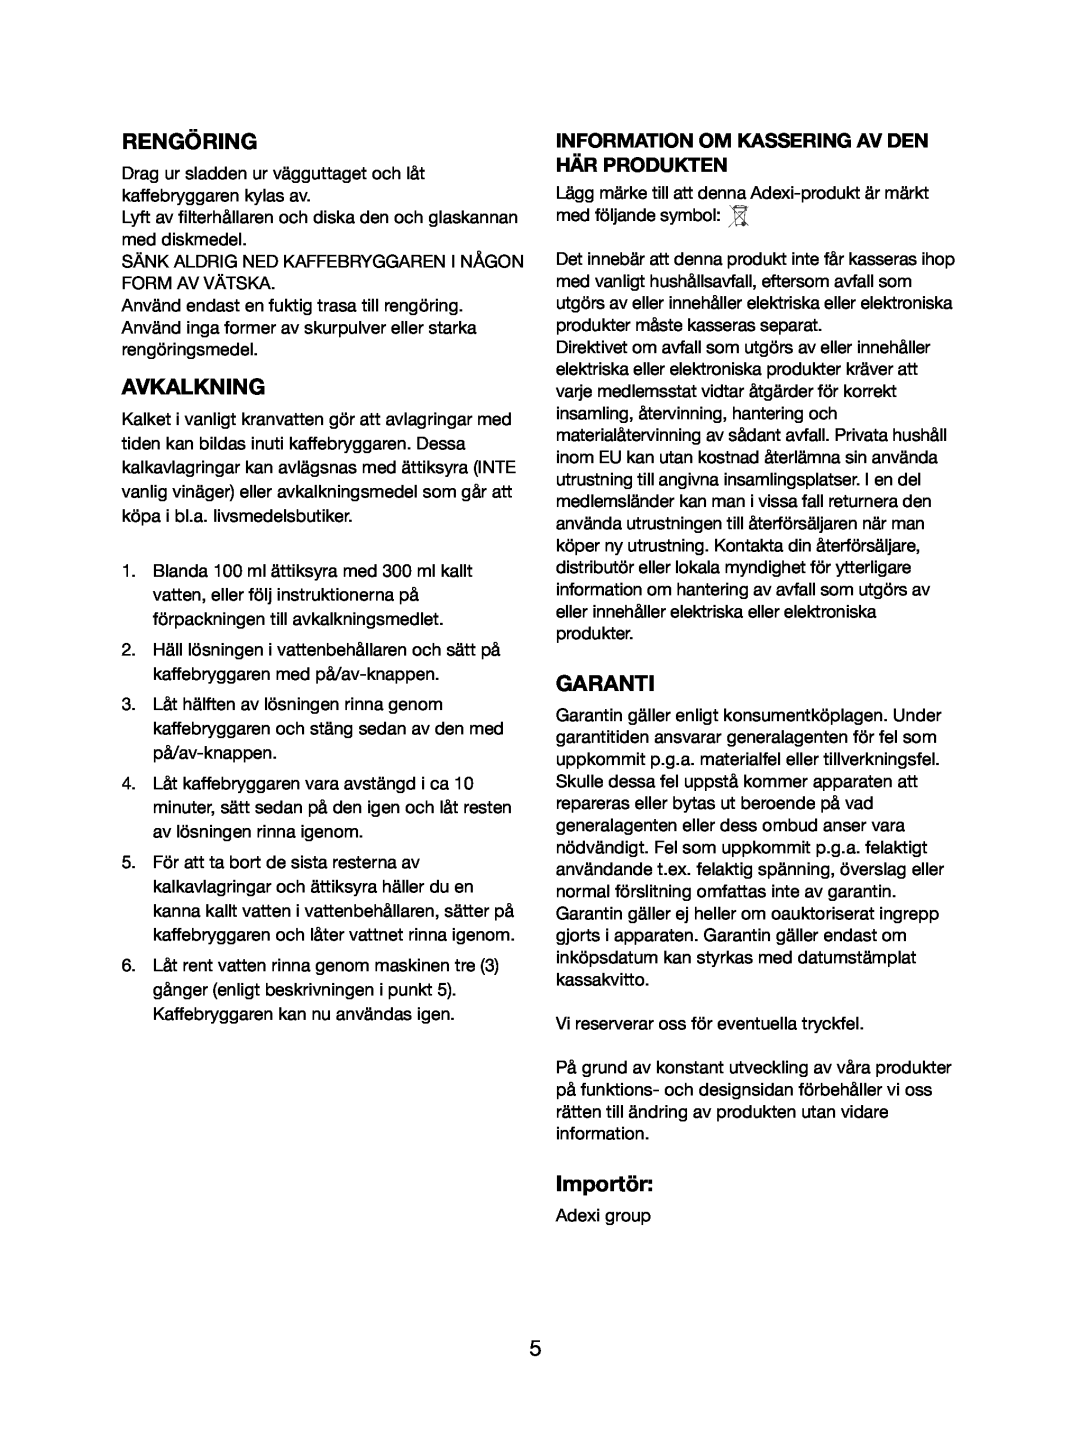 Melissa 745-112 manual Rengöring, Avkalkning, Garanti, Importör, Information Om Kassering Av Den Här Produkten 